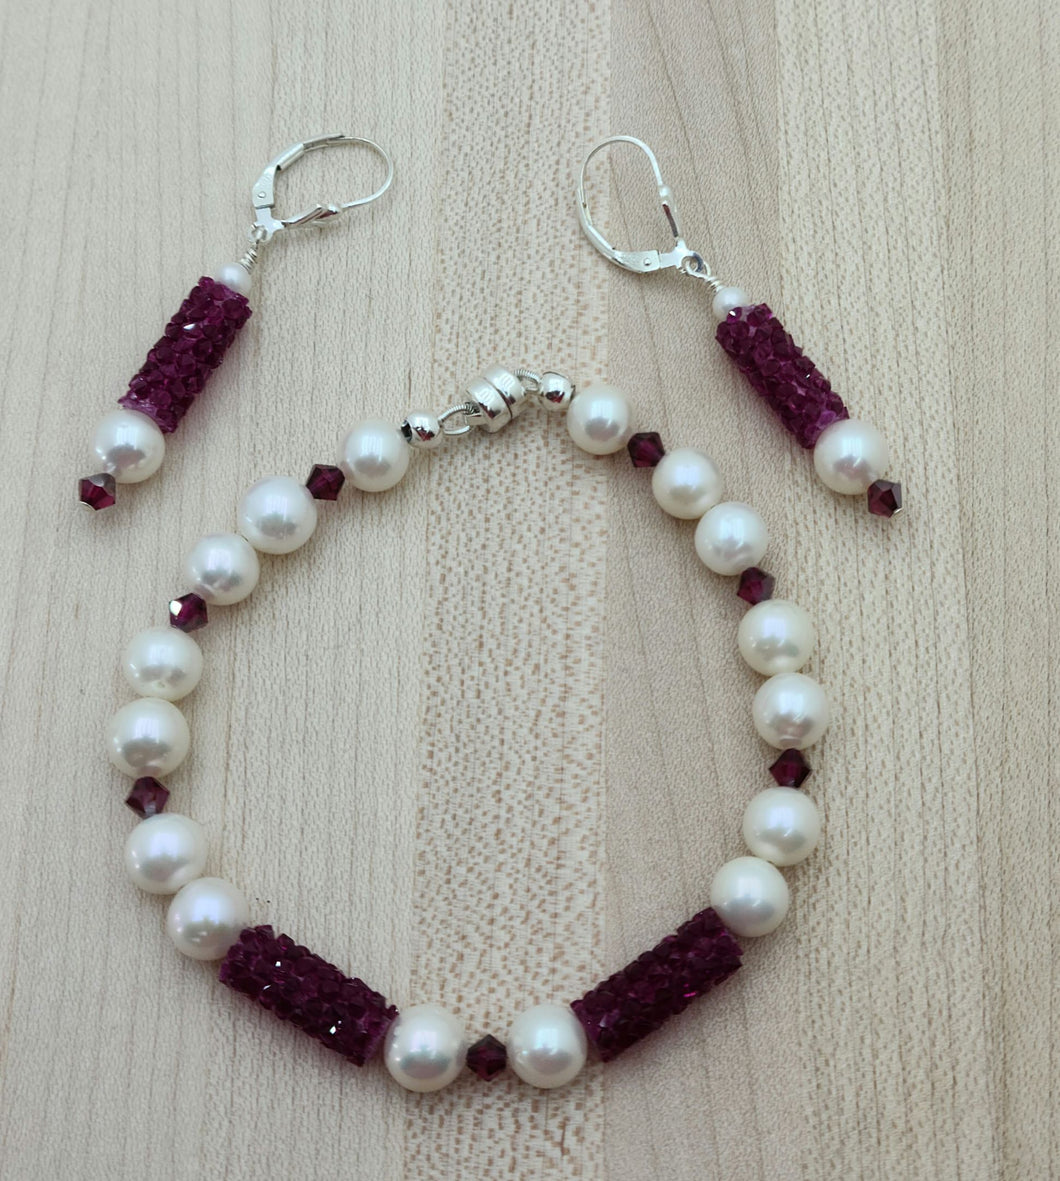 Fuchsia Crystal Rocks & FW Pearls Bracelet & Earrings